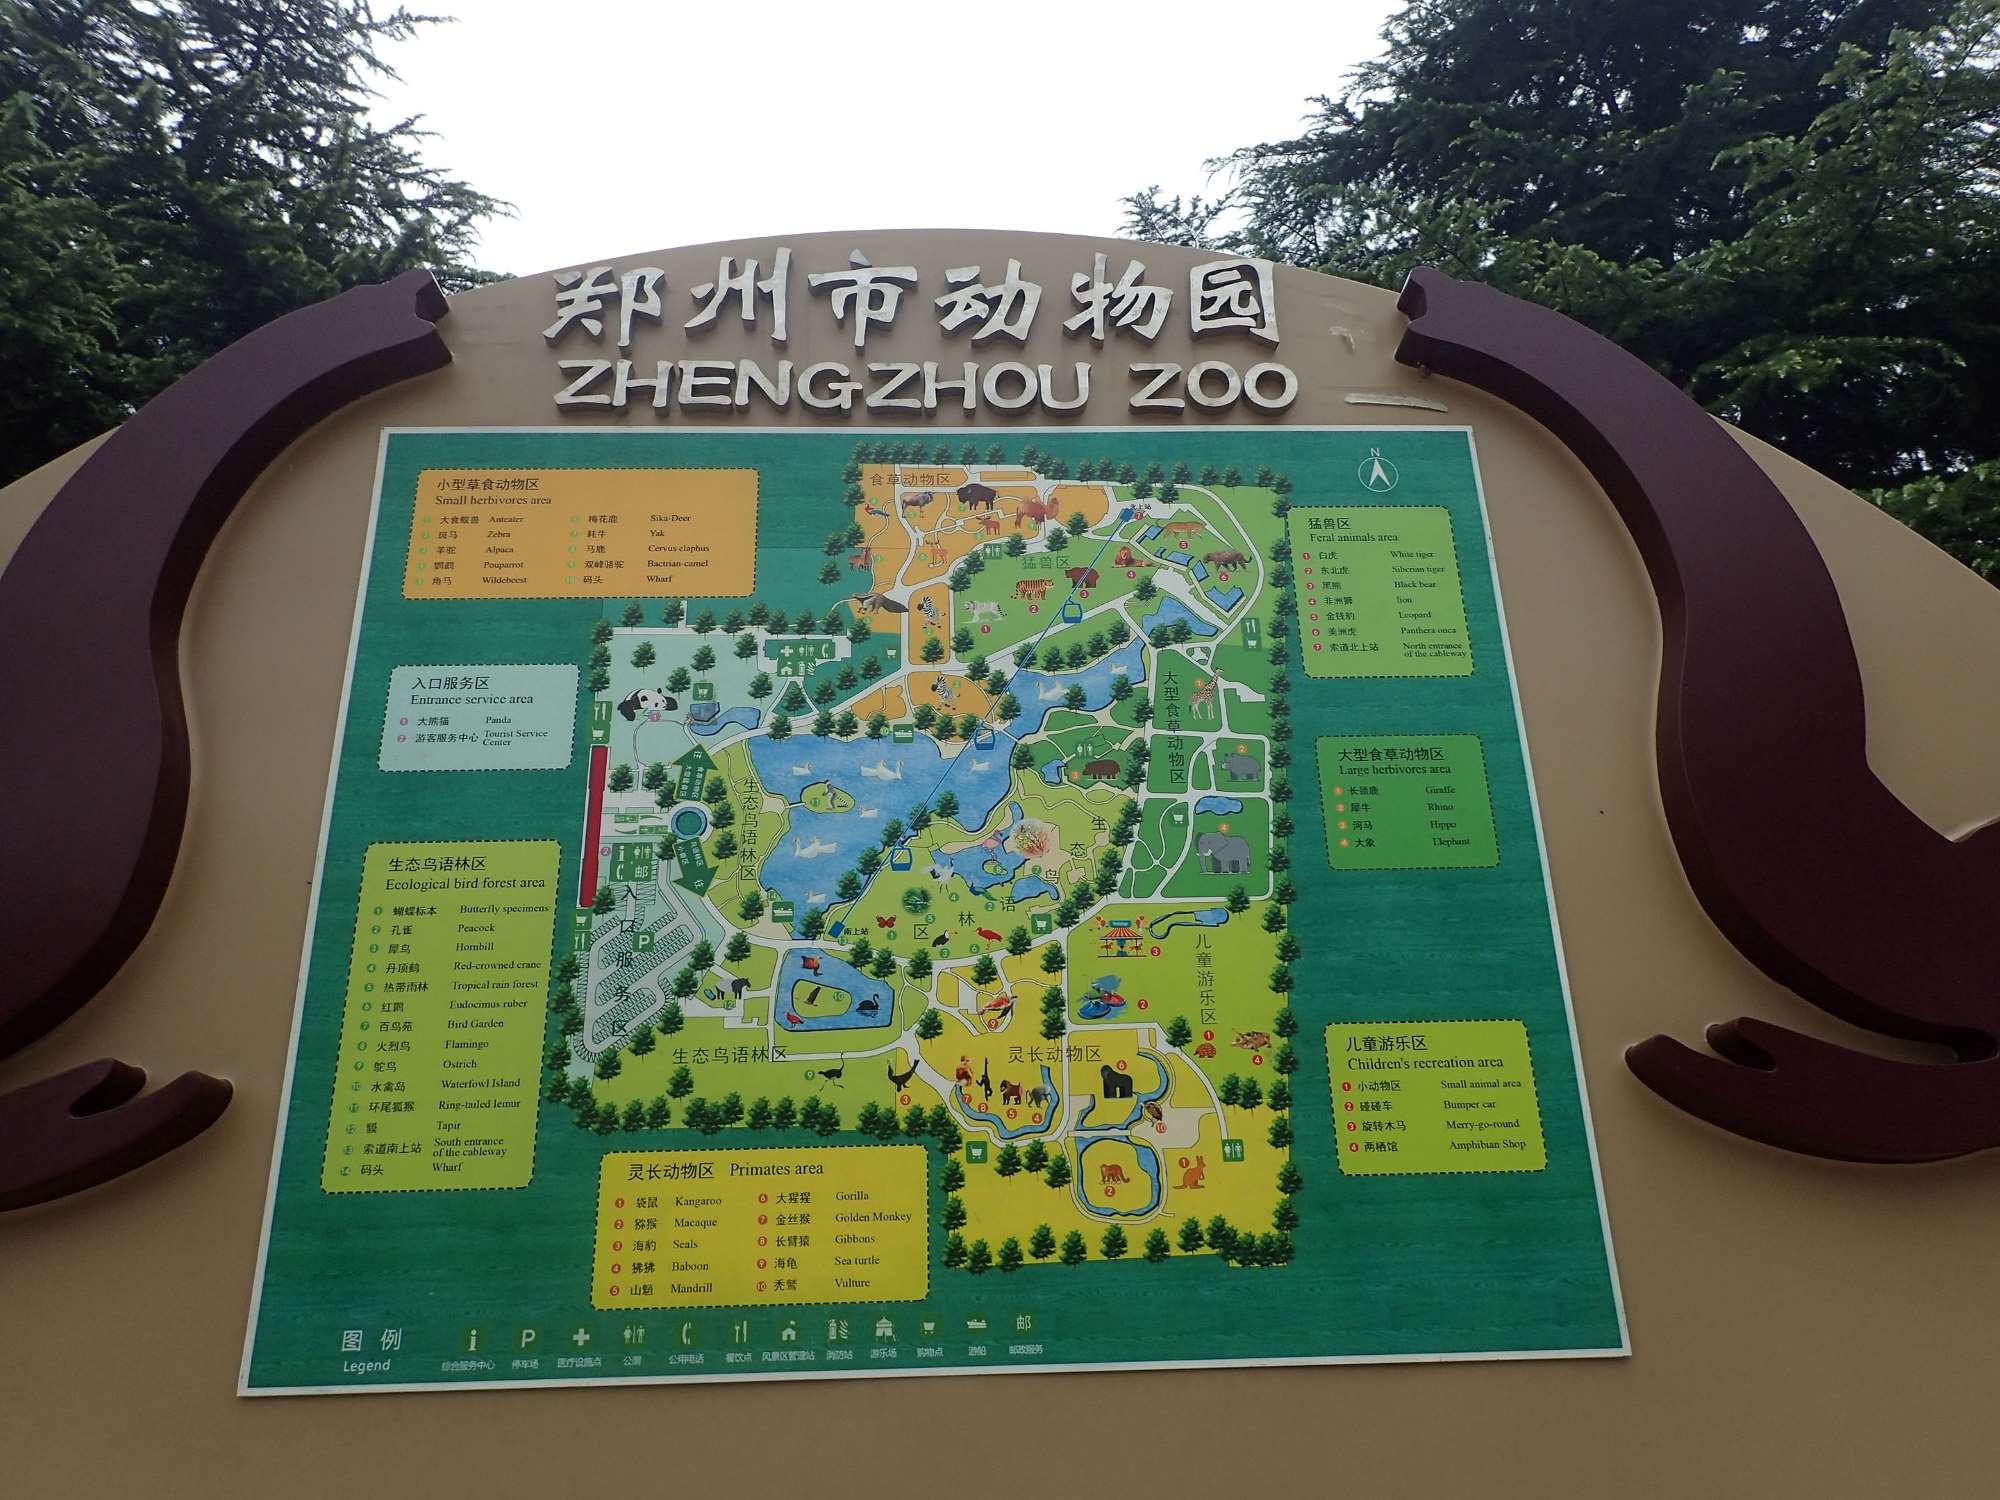 19-intriguing-facts-about-zhengzhou-zoo